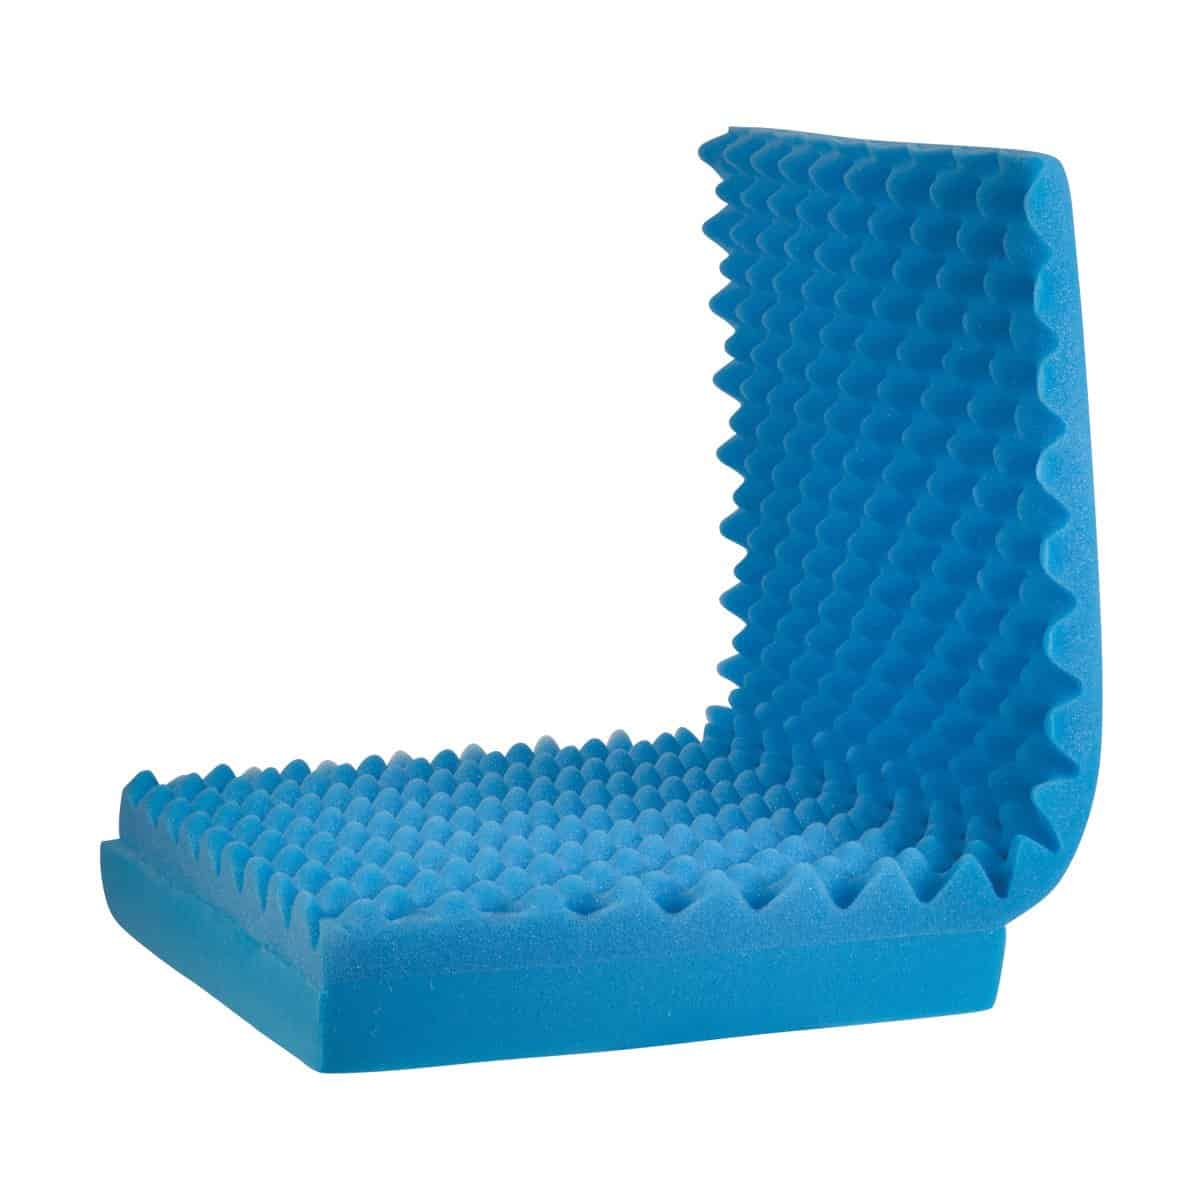 DMI Egg Crate Sculpted Foam Chair Cushion, Seat Cushion for Car, Office  Chair or Wheelchair Cushion to Relieve Back, Tail Bone Pain, Sciatica